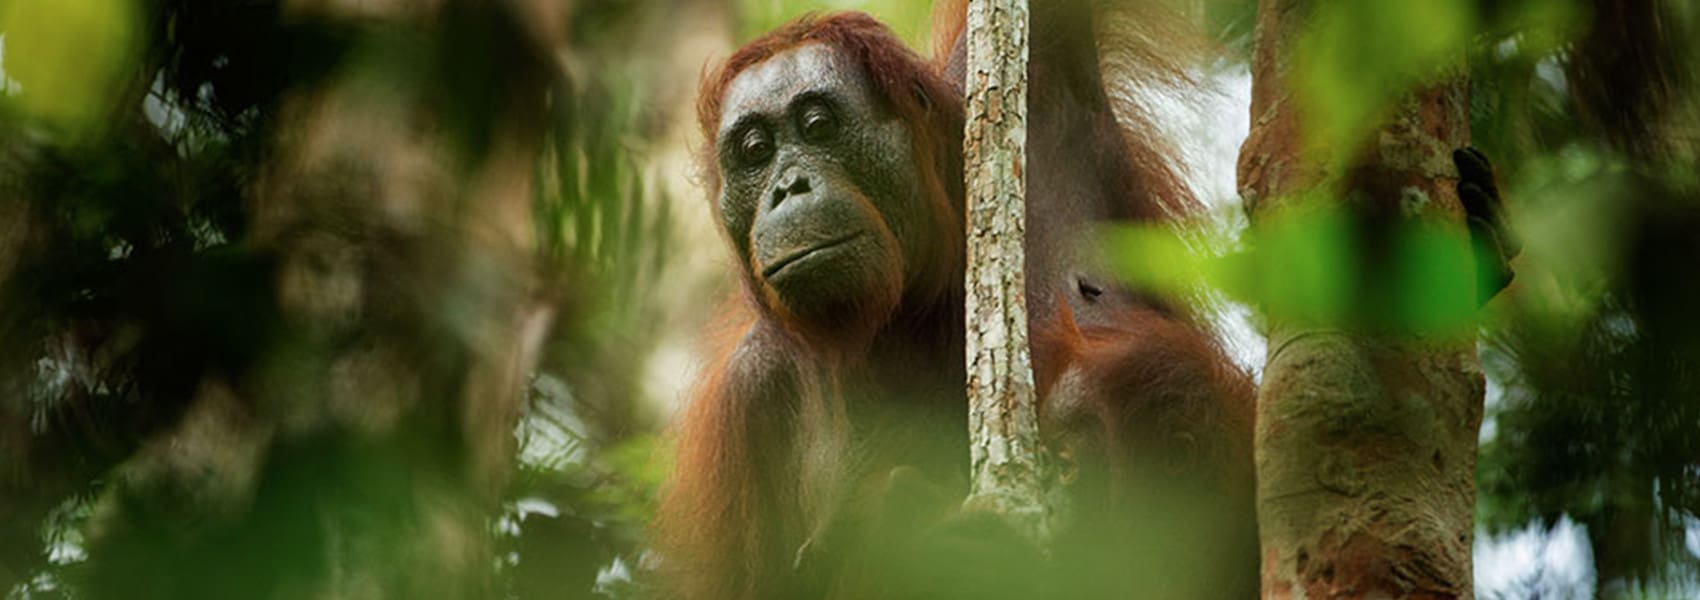 Orangutan Rainforest Borneo